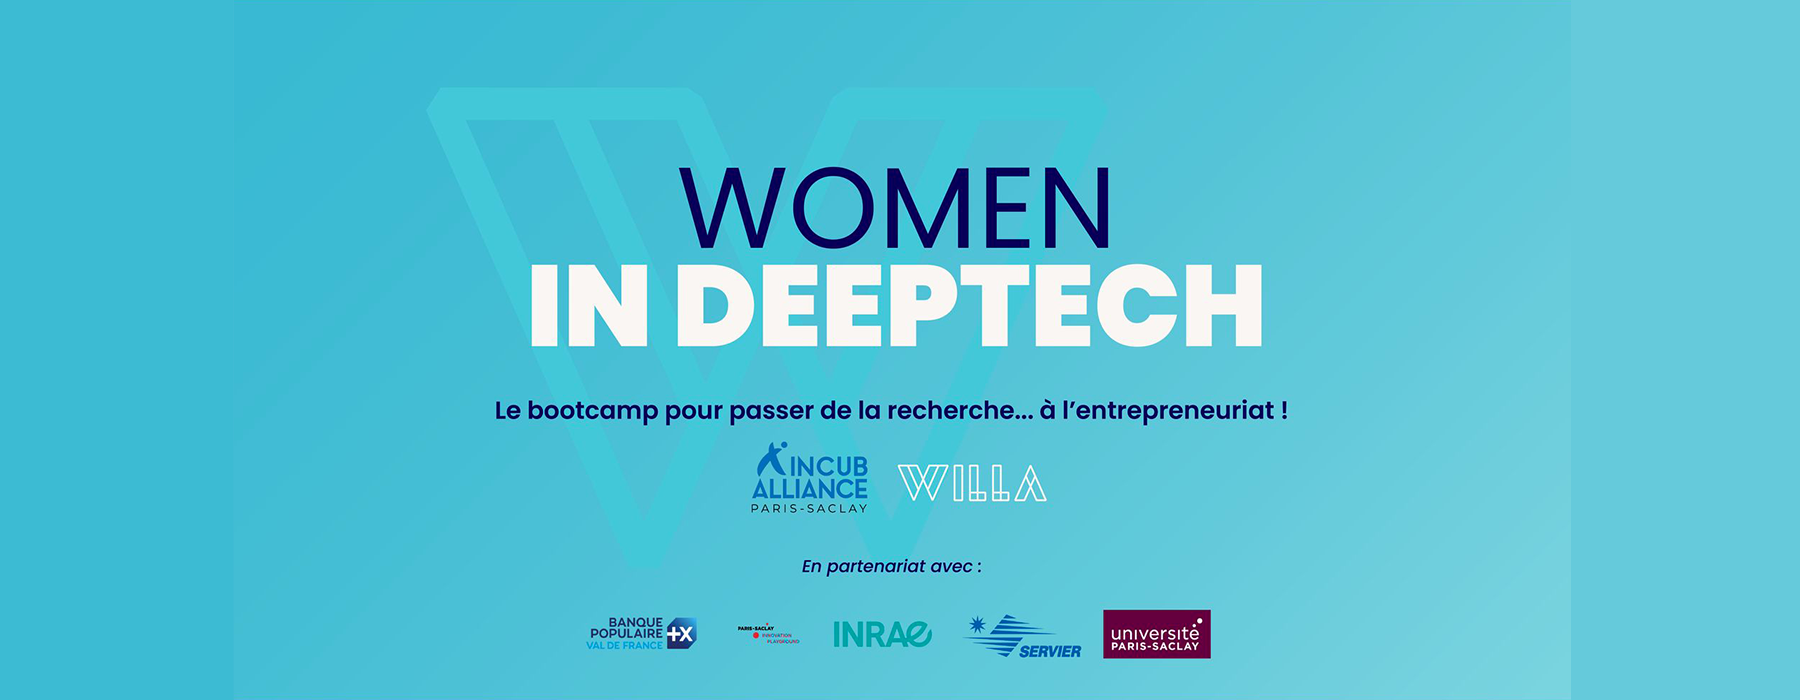 Women Deeptech